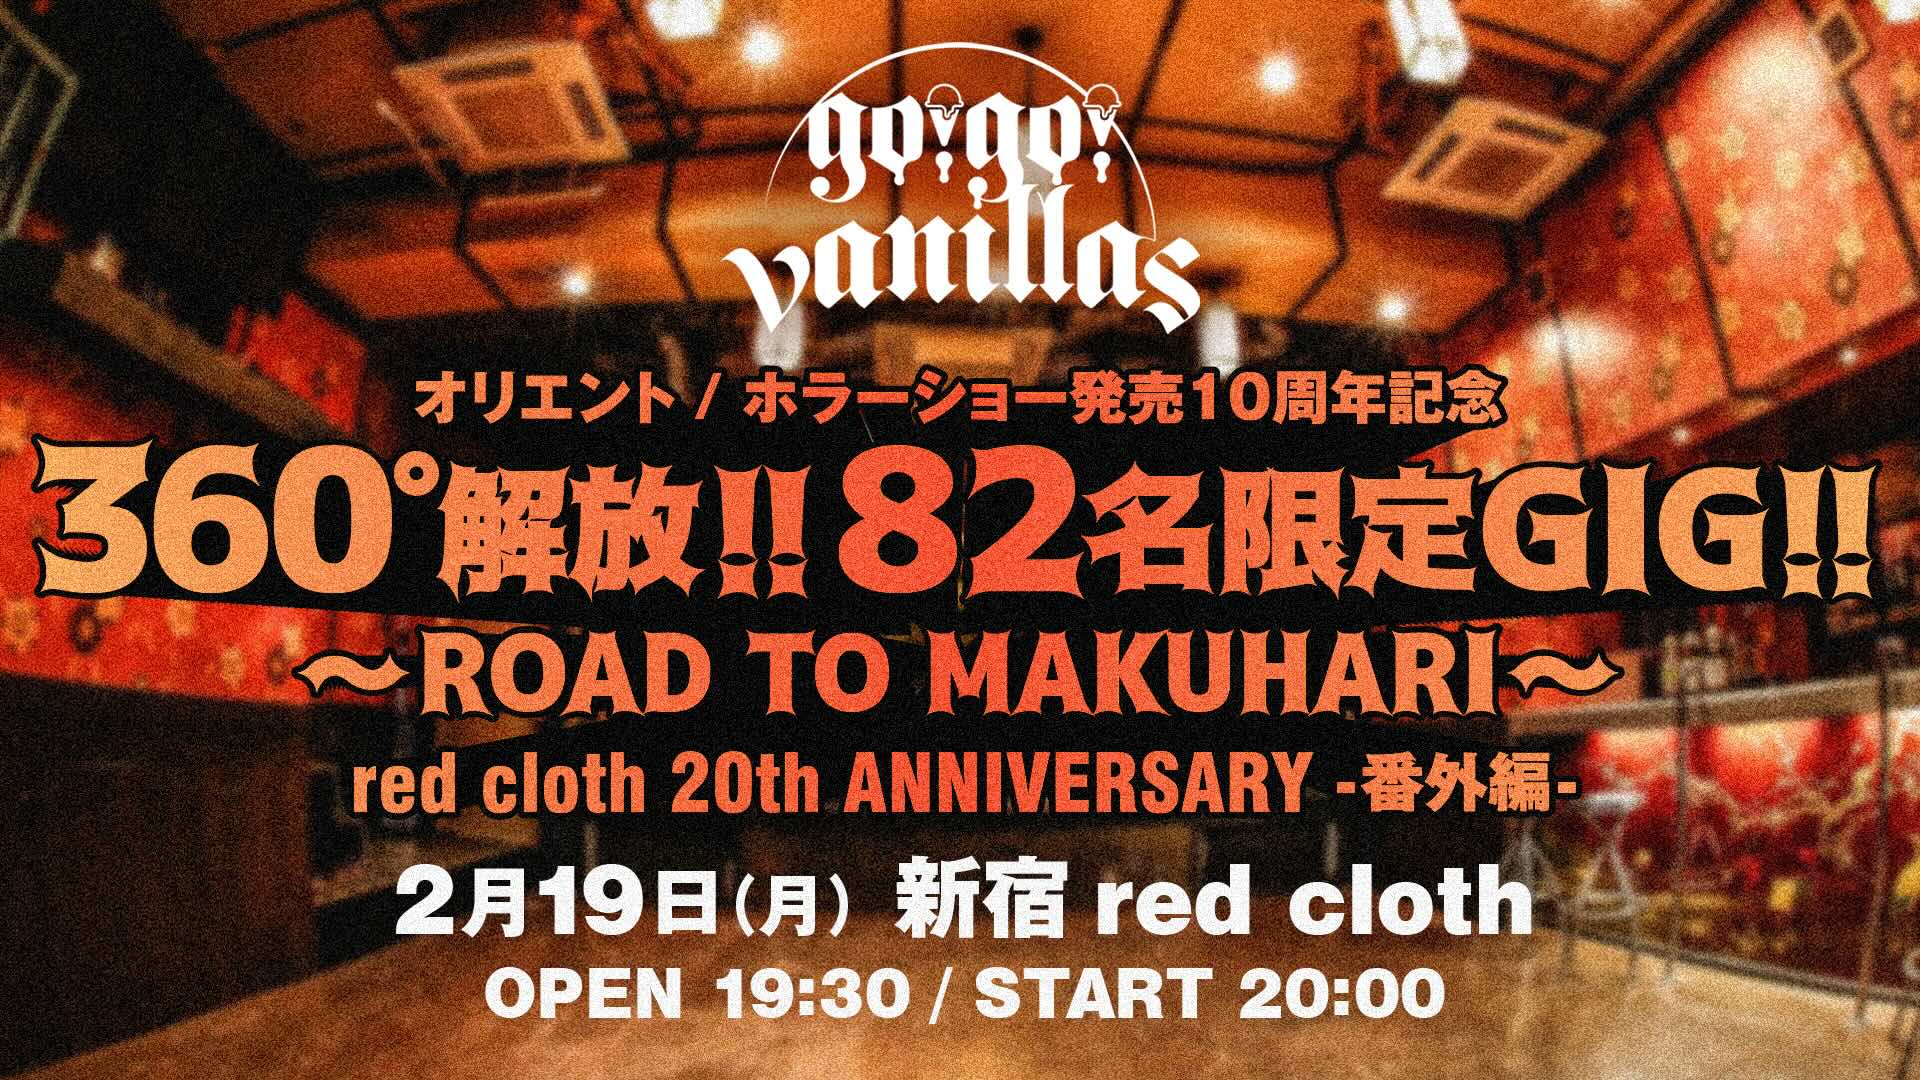 新宿 red cloth <span class="live-title">【オリエント / ホラーショー発売10周年記念】360°解放!! 82名限定GIG!! 〜ROAD TO MAKUHARI〜</span> 